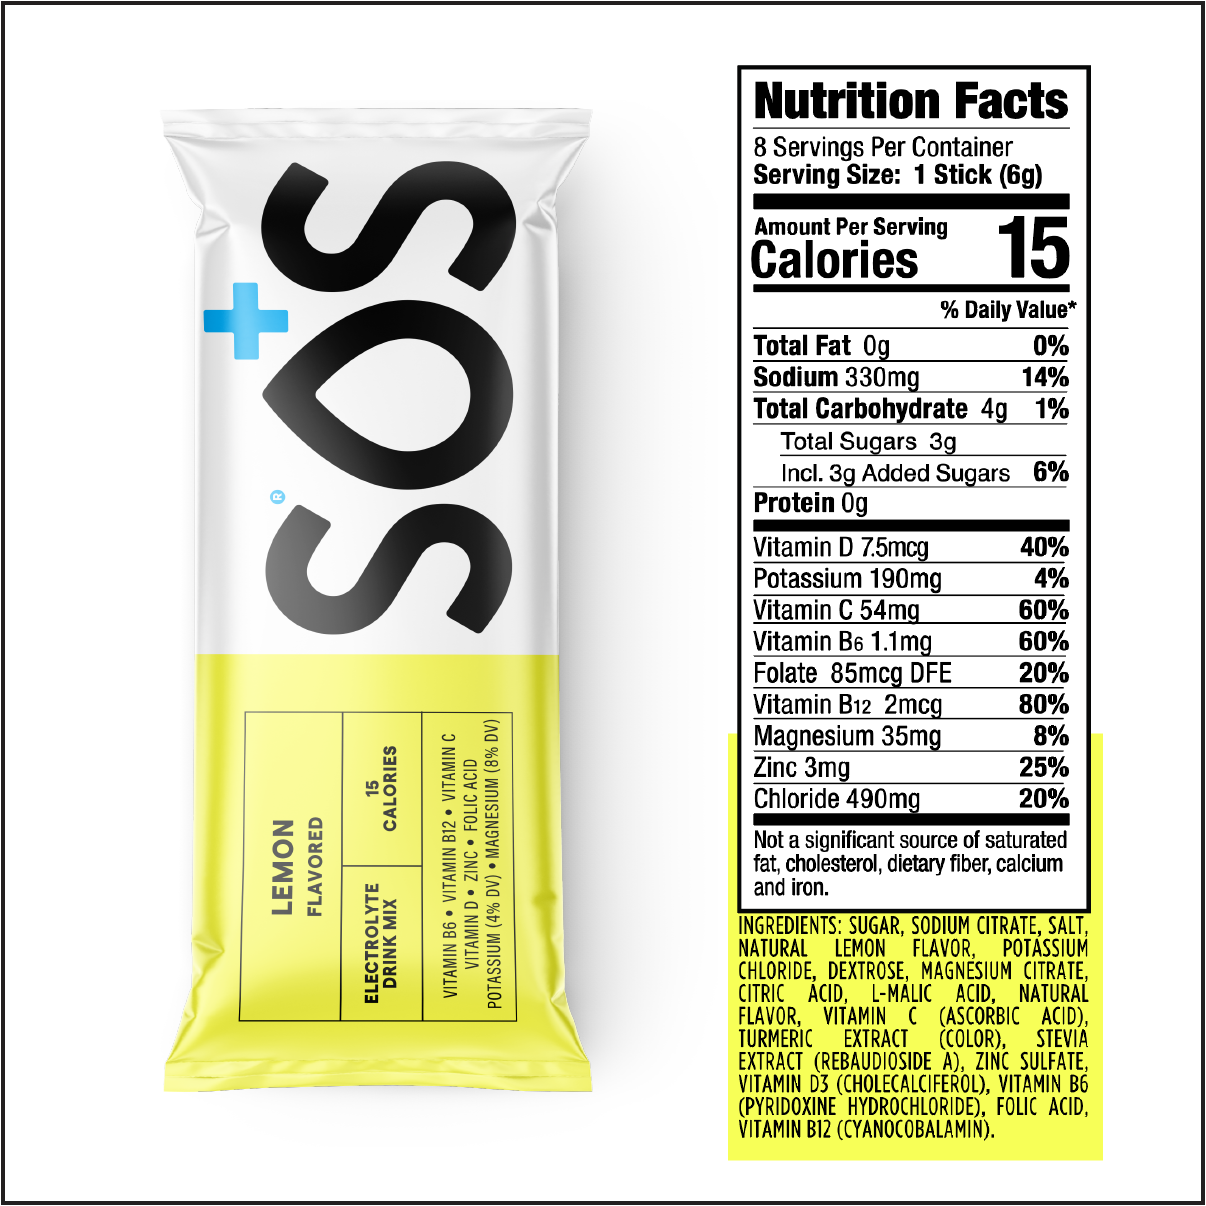 SOS Daily - Vitamin Enhanced Lemon 8ct Box